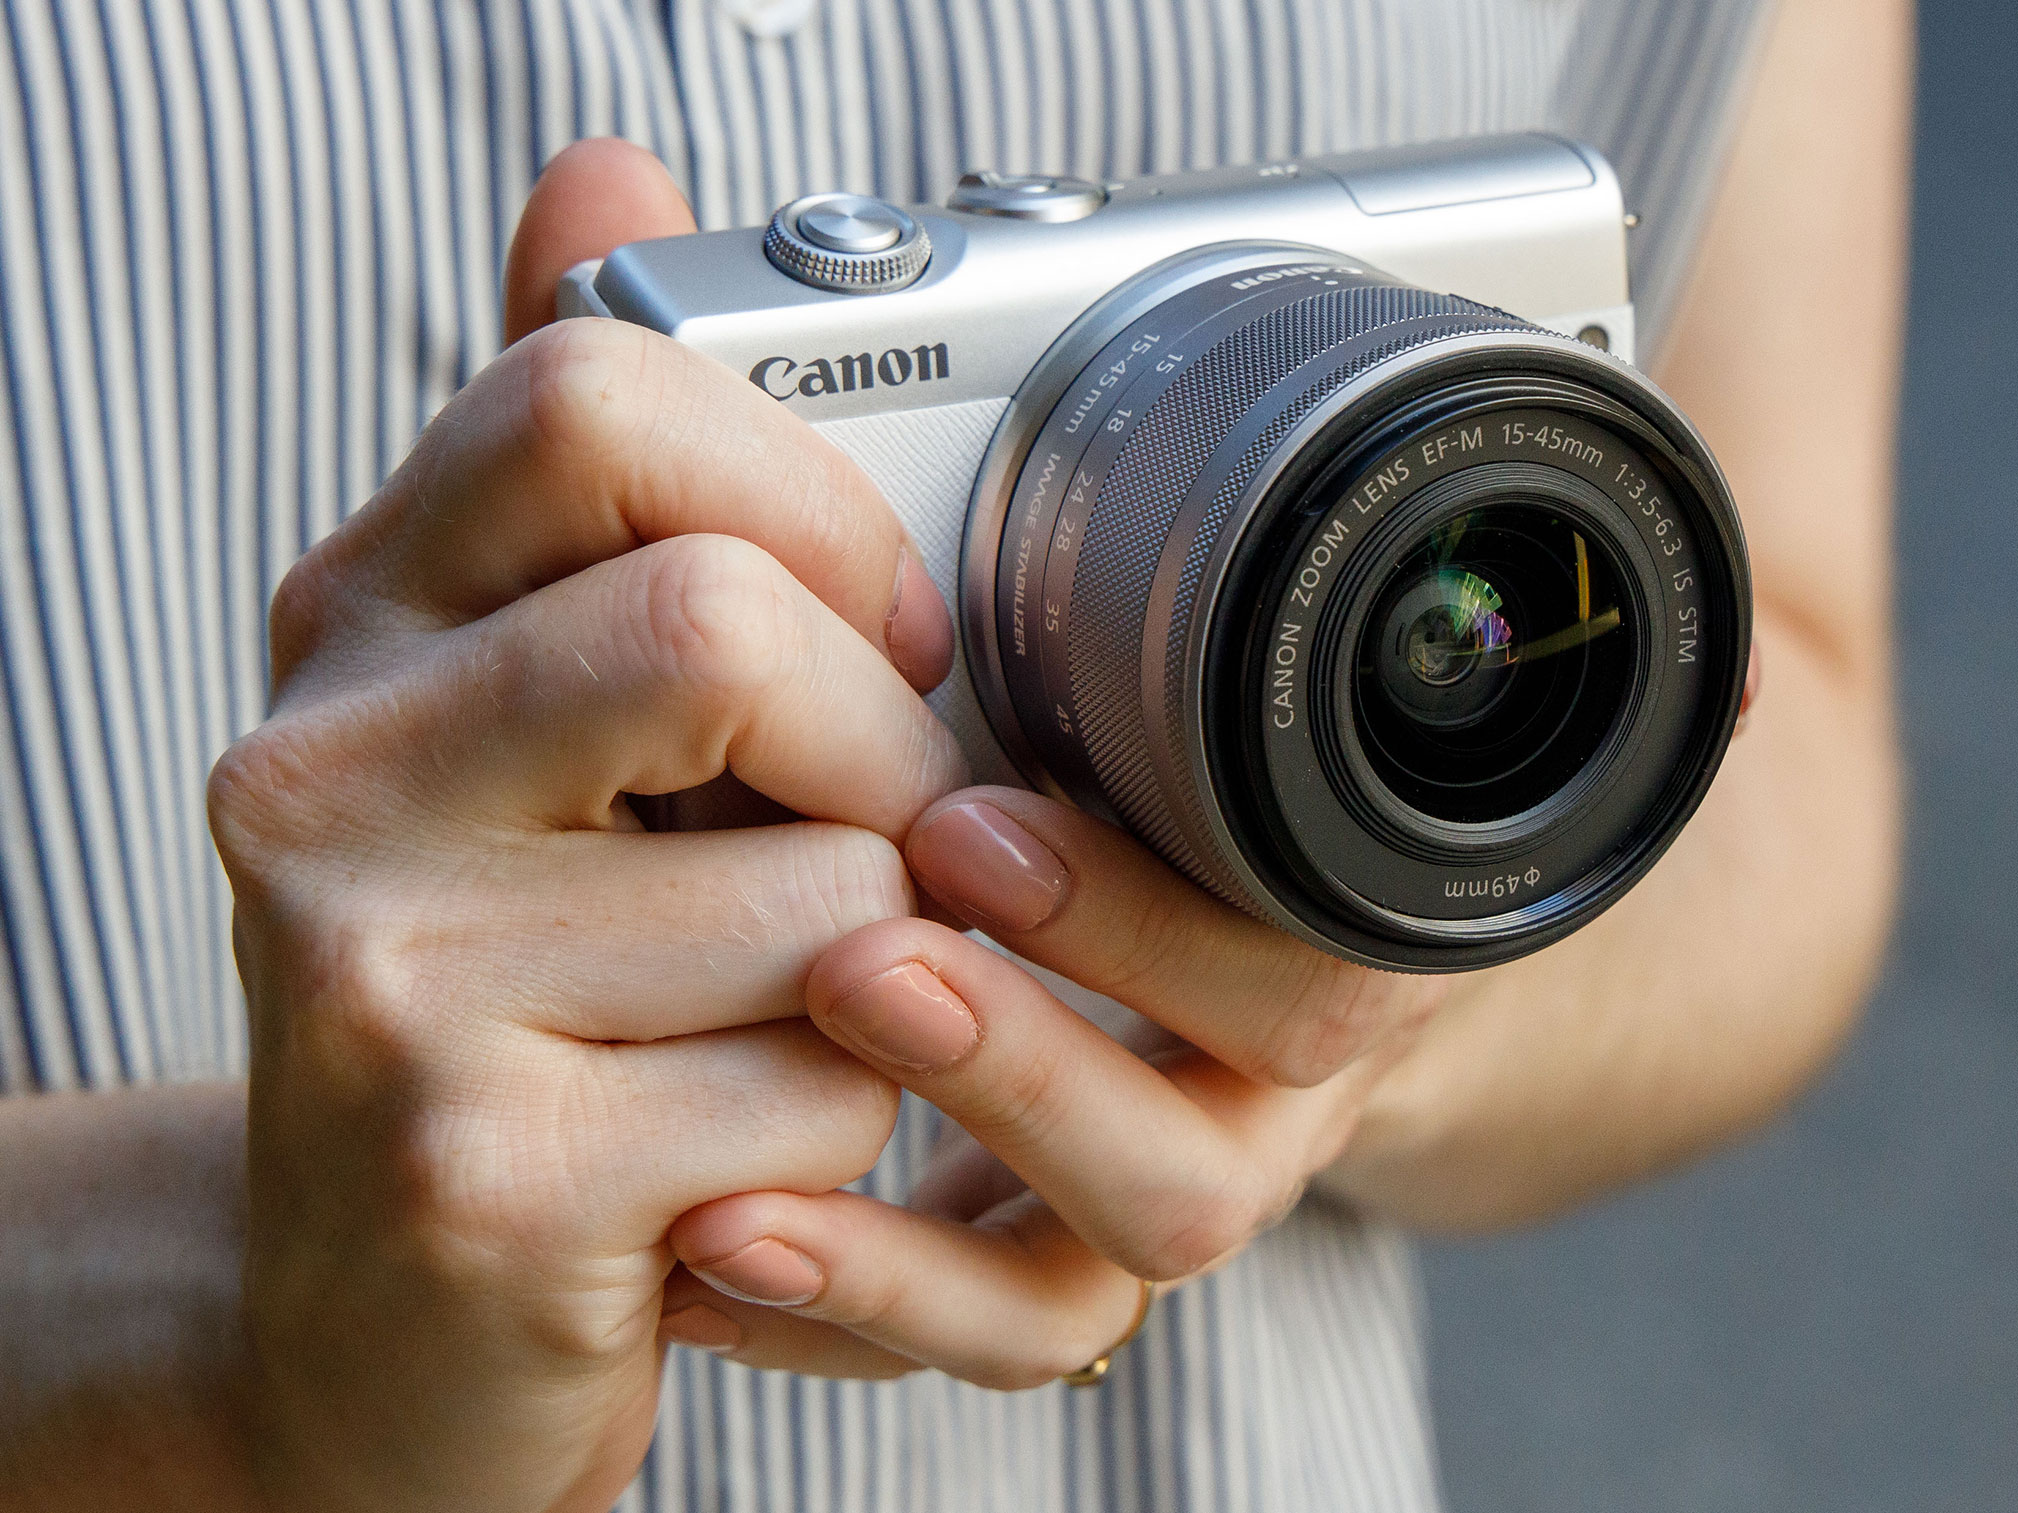 Máy ảnh Canon EOS M200 với ống kính 15-45mm (White)